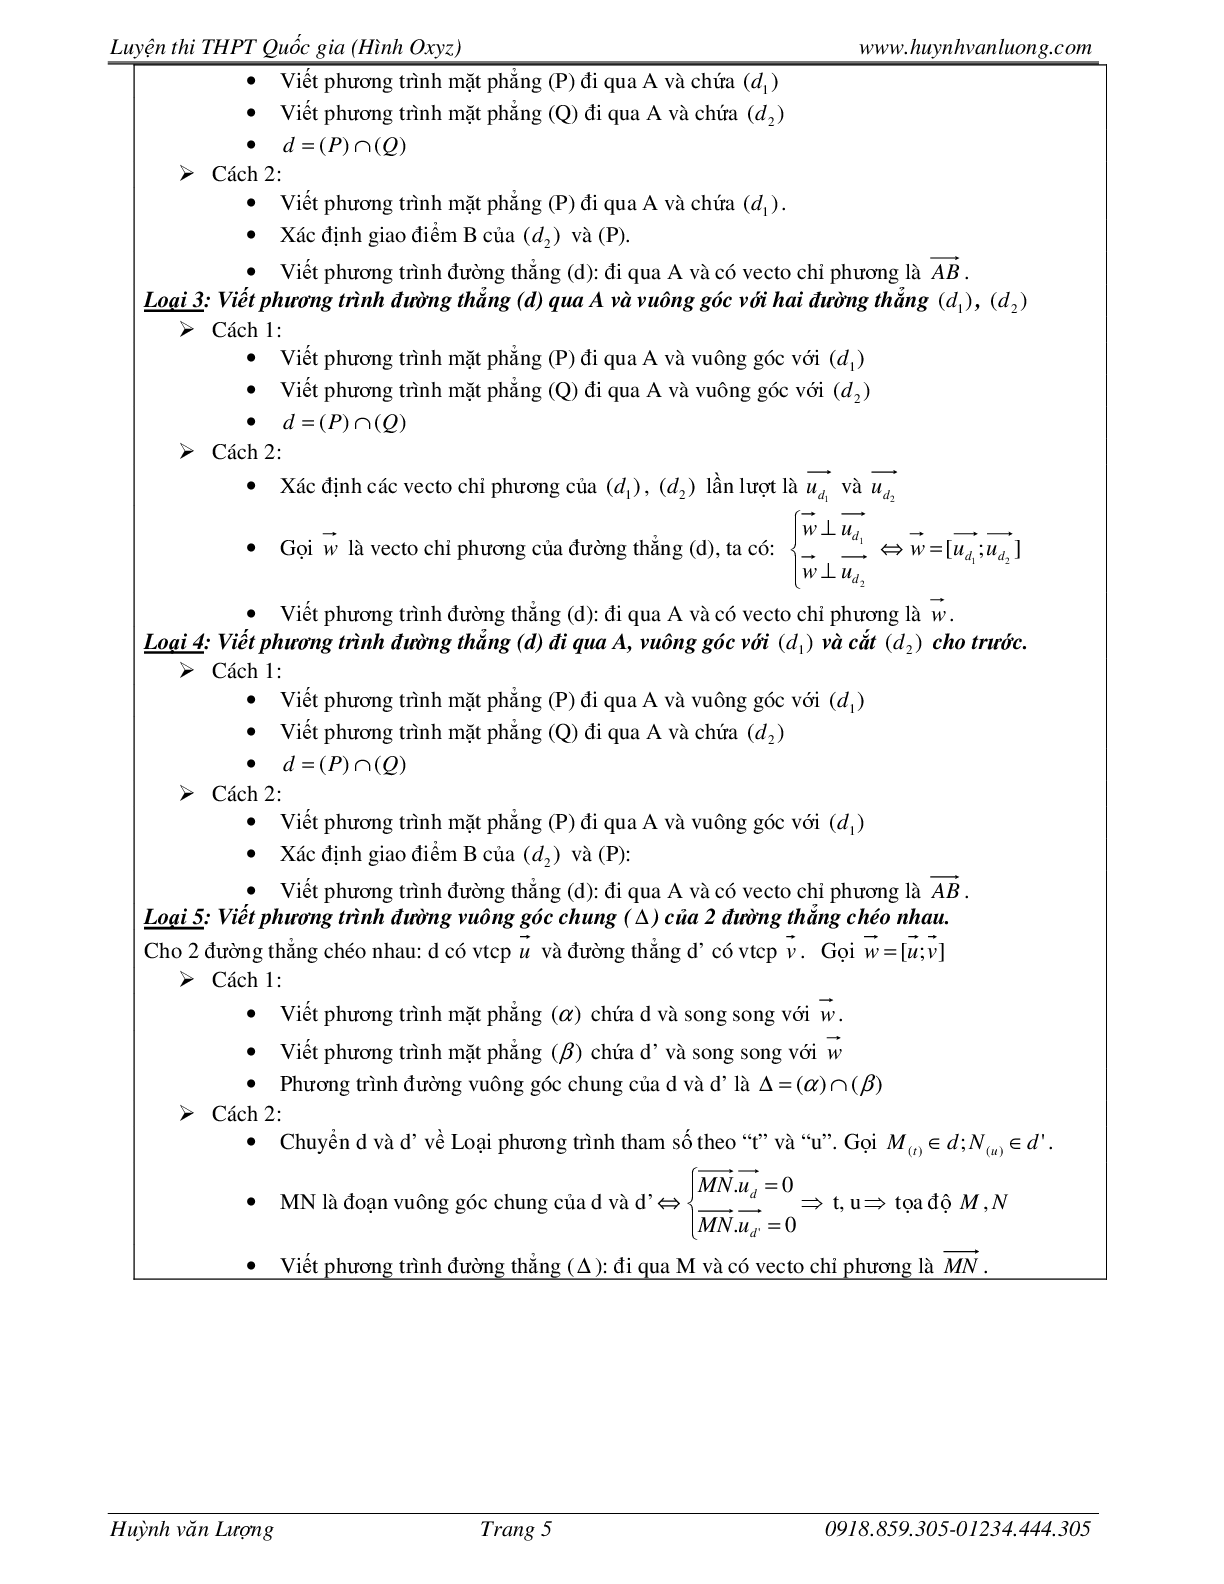 236 Bài tập trắc nghiệm hình học Oxyz môn Toán lớp 12 năm 2023 (trang 5)